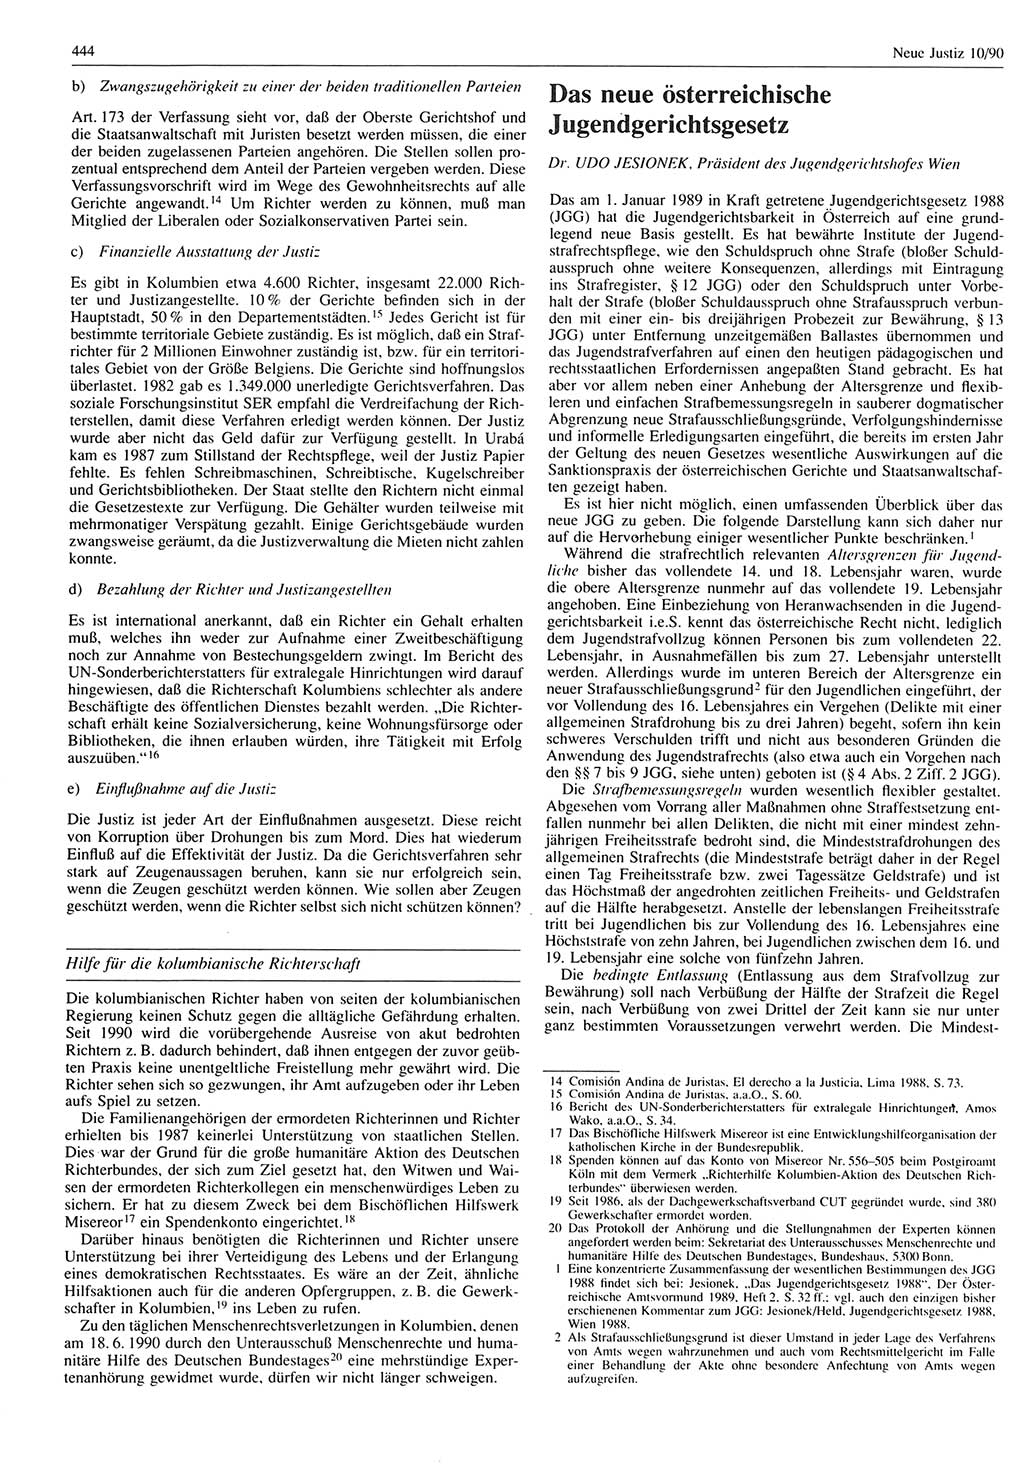 Neue Justiz (NJ), Zeitschrift für Rechtsetzung und Rechtsanwendung [Deutsche Demokratische Republik (DDR)], 44. Jahrgang 1990, Seite 444 (NJ DDR 1990, S. 444)